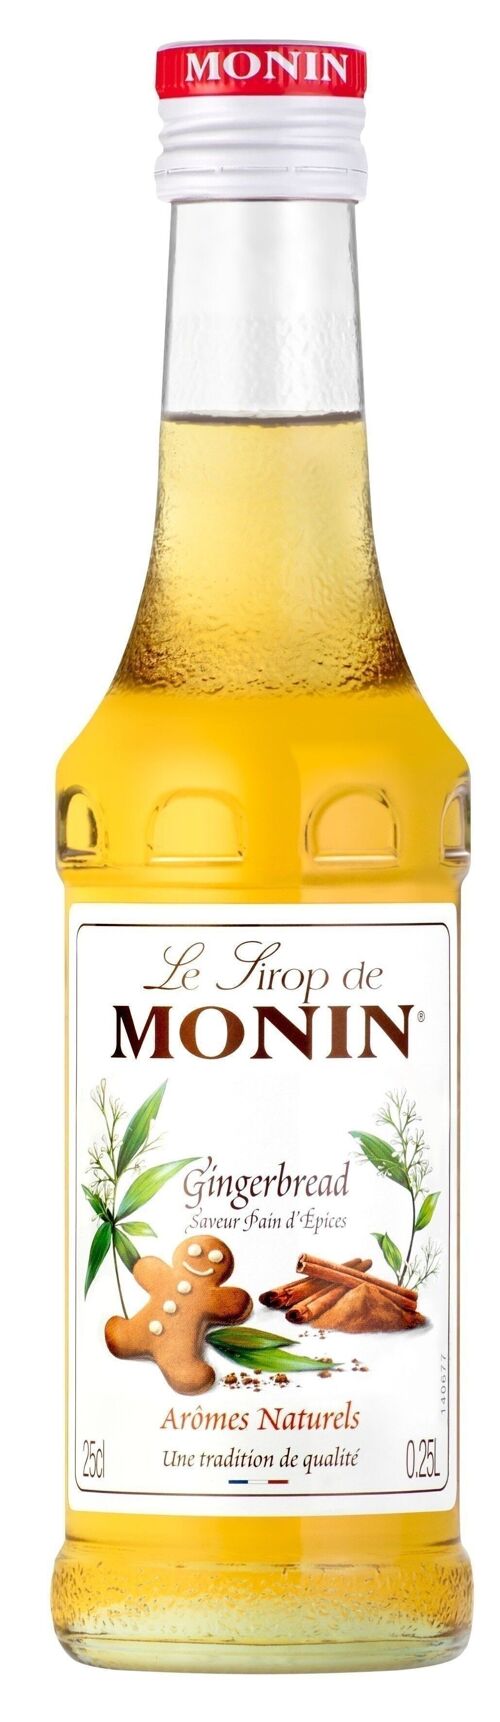 Sirop Saveur Pain d'épices MONIN pour aromatiser vos boissons chaude - Arômes naturels - 25cl